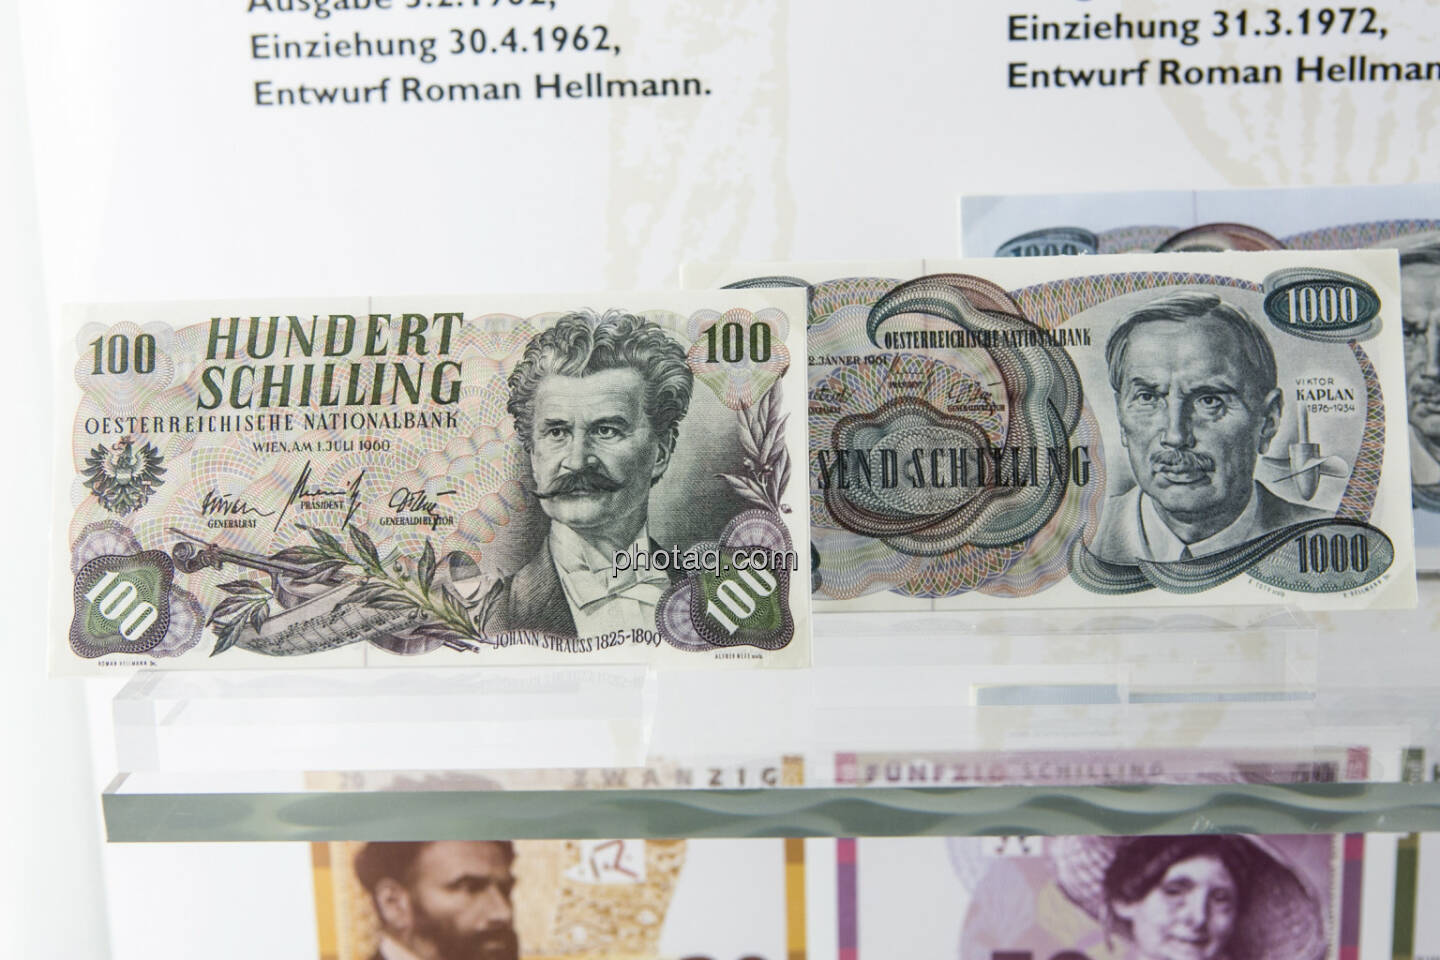 100-Schilling-Note aus dem Jahr 1960, 1.000 Schiling Note aus dem Jahr 1961